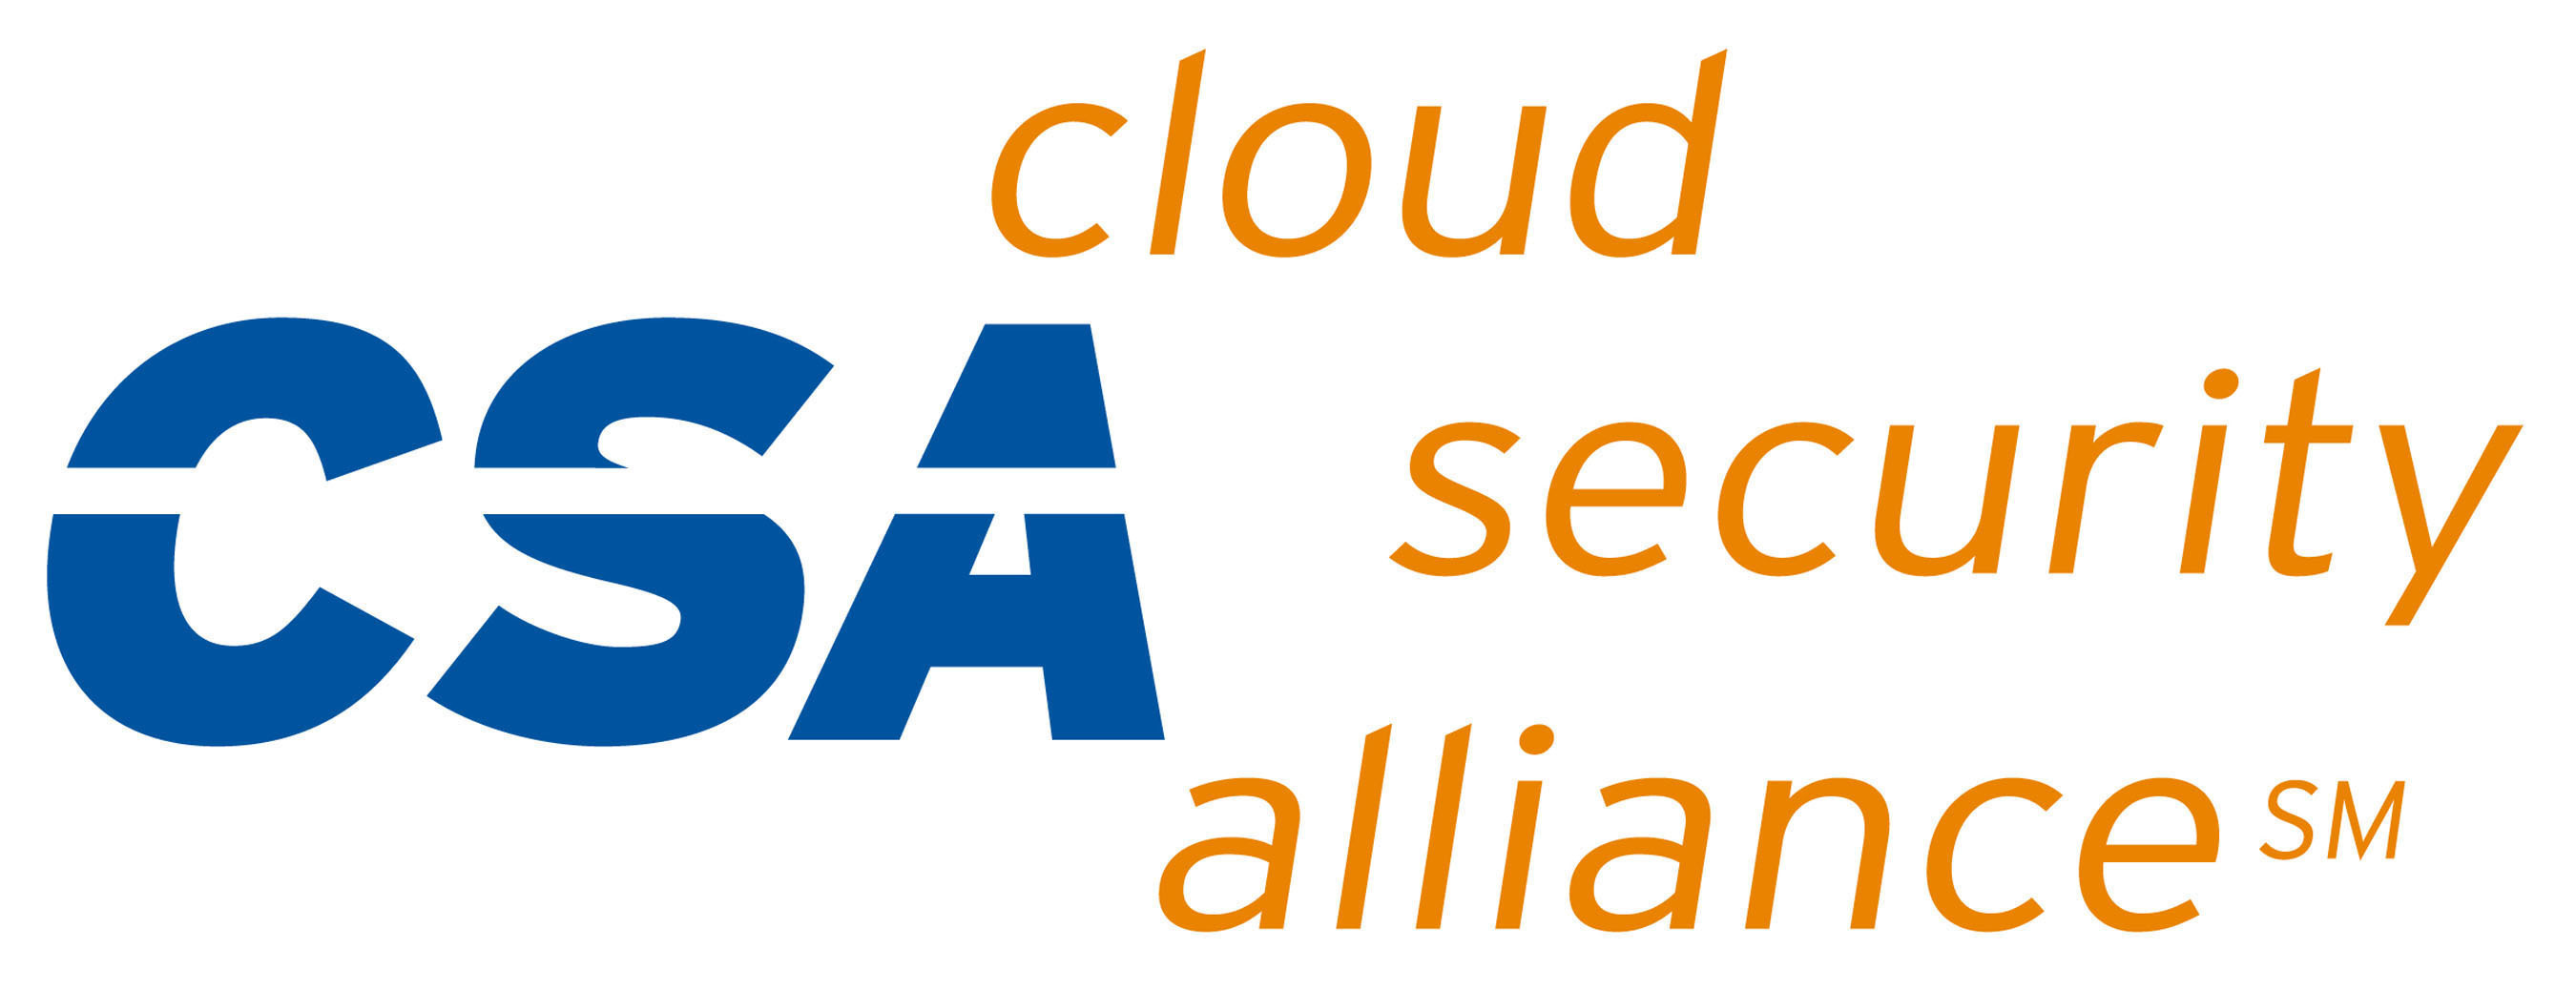 Cloud Security Alliance Logo. (PRNewsFoto/Cloud Security Alliance) (PRNewsFoto/)